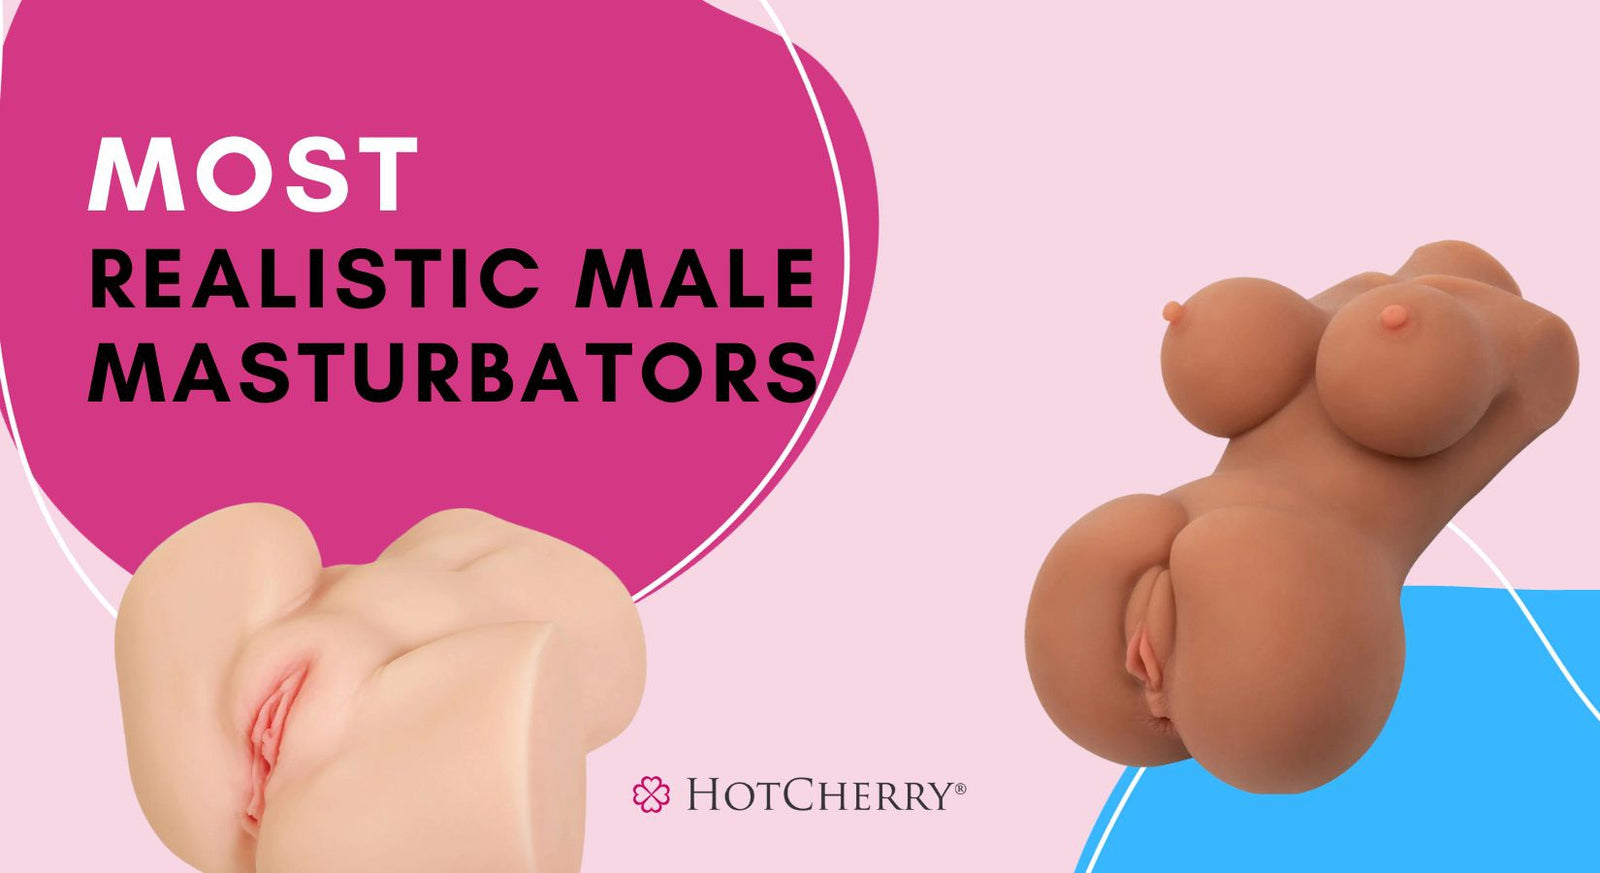 14 Most Realistic Male Masturbators: Realistic Masturbators, Vagina & Ass Strokers